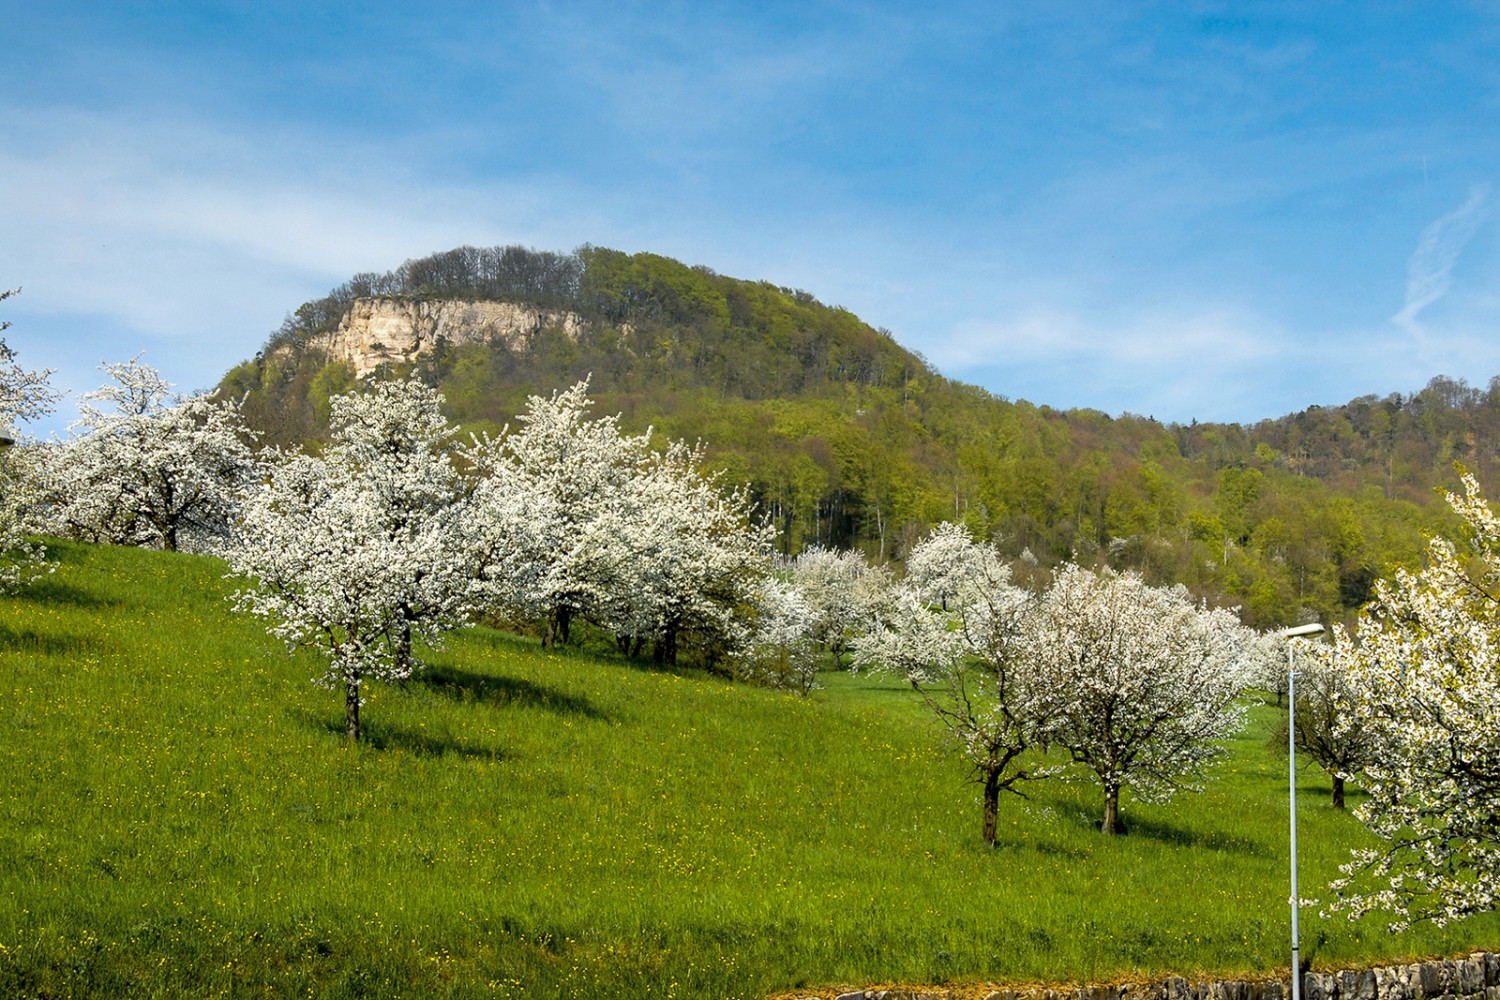 La regione di Basilea Campagna è particolarmente attraente in primavera, nel periodo di fioritura dei ciliegi. Sullo sfondo si staglia l’impressionante Sissacherflue. Foto: Paul Menz